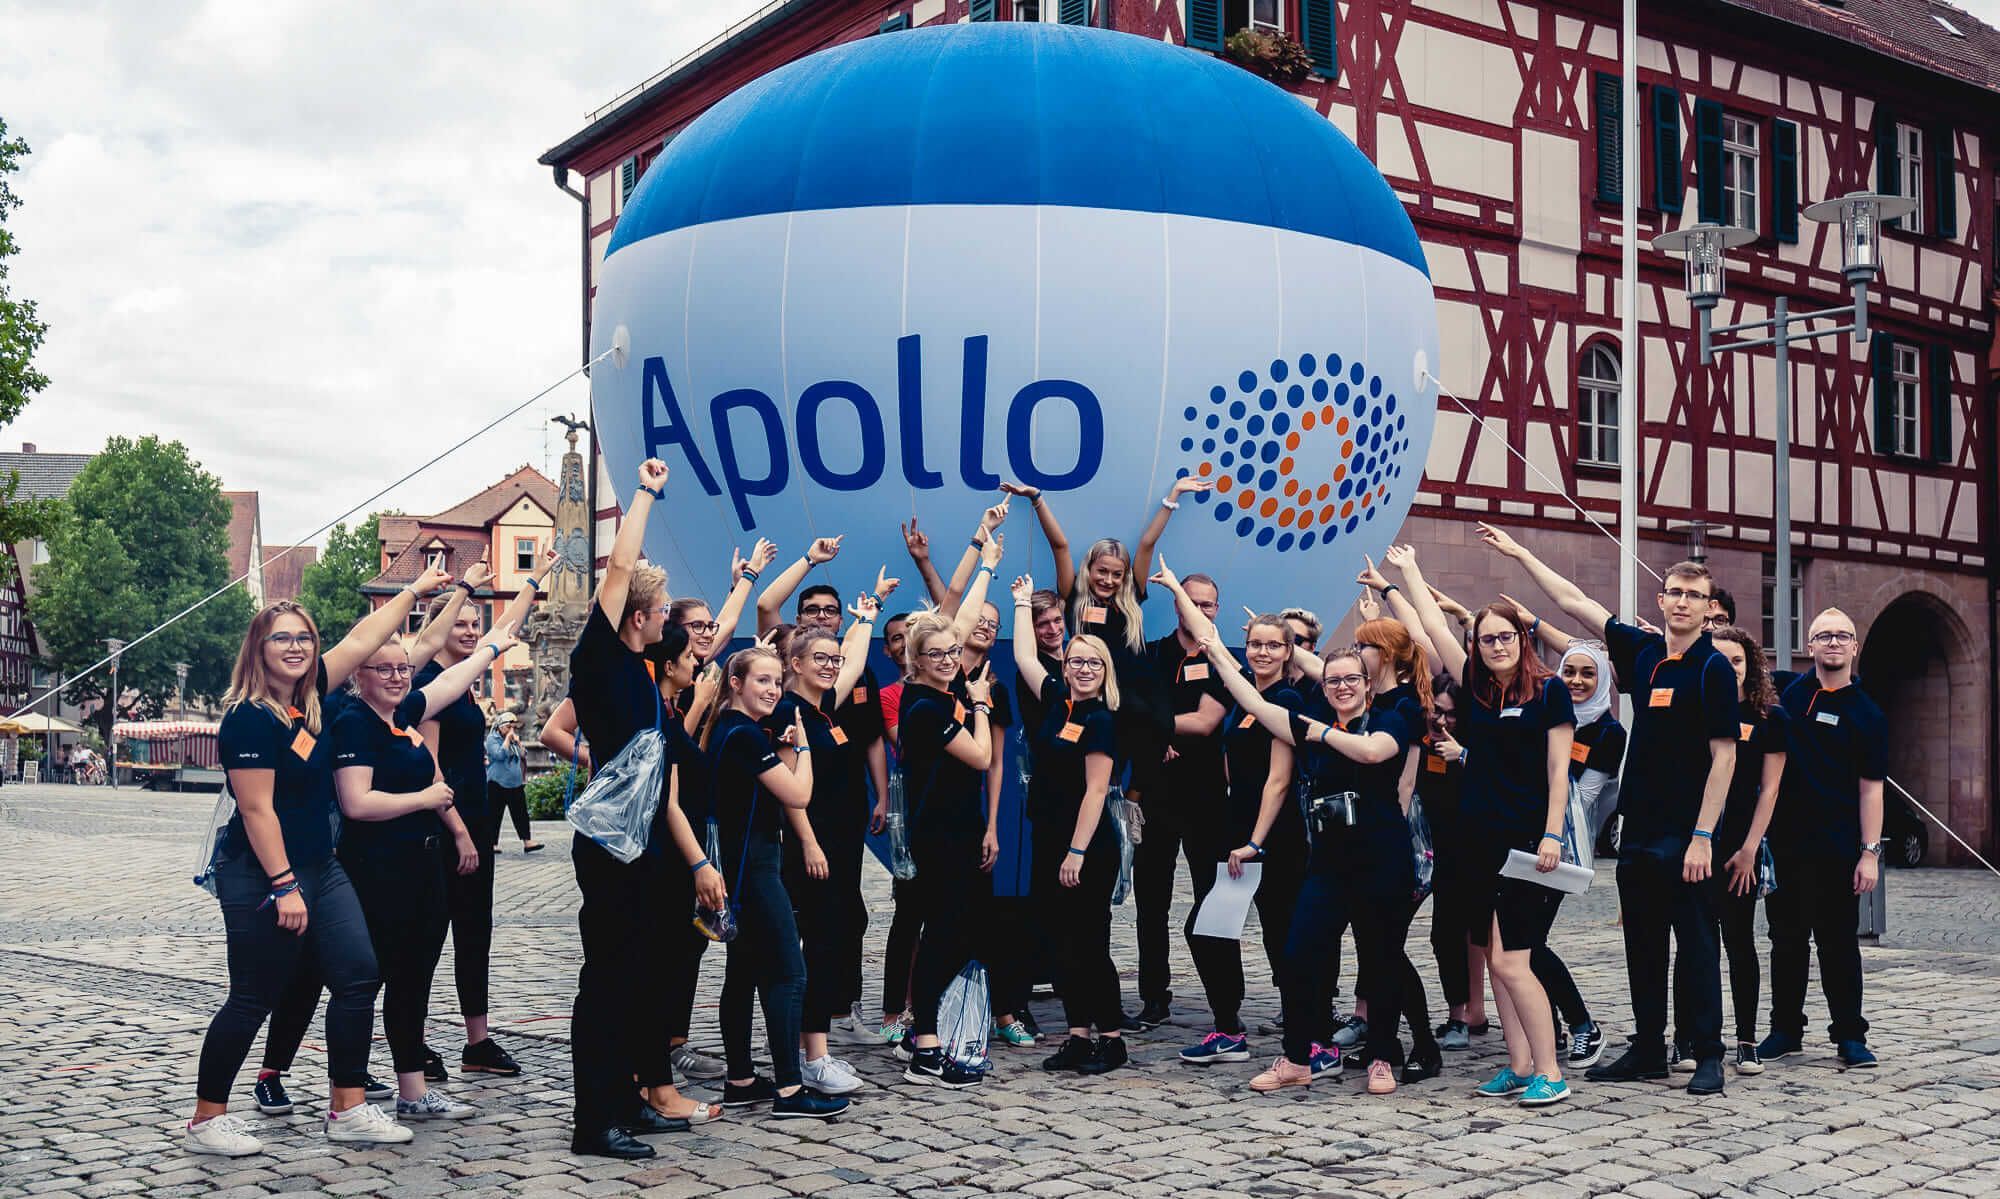 Gruppenfoto von Mitarbeitern vor Apollo-Schriftzug